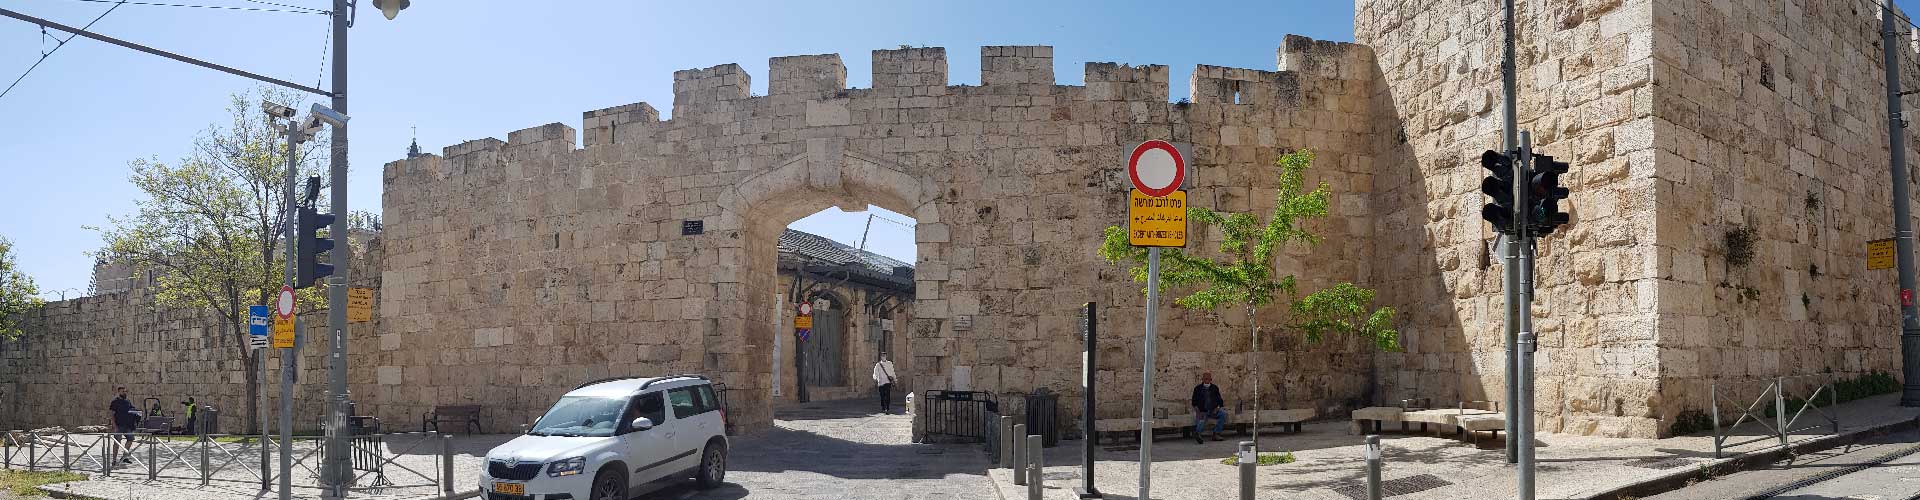 השער החדש בירושלים